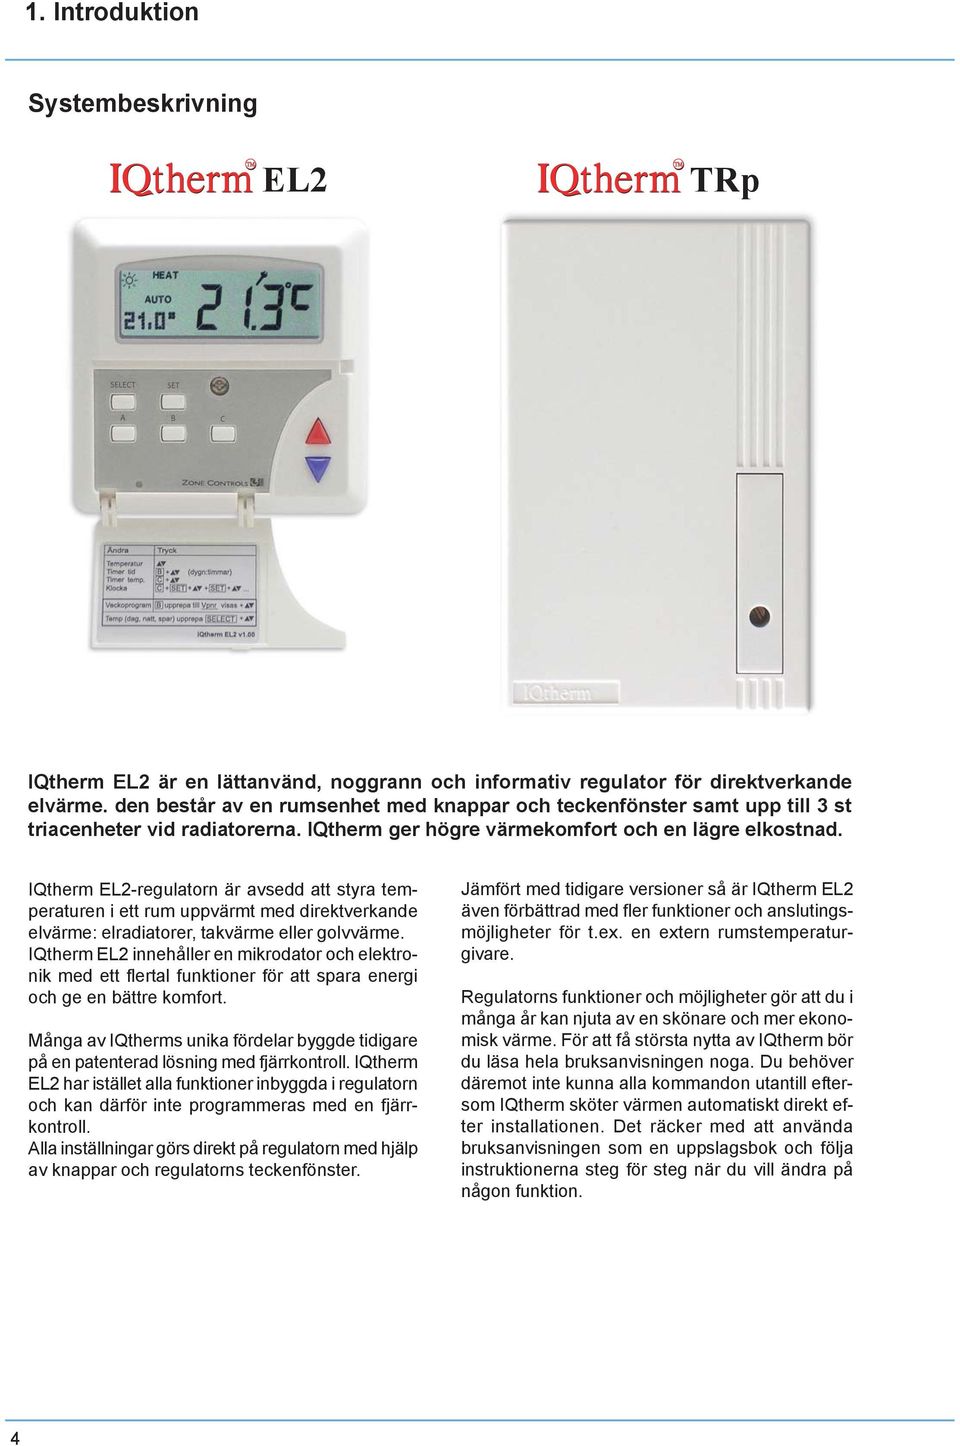 IQtherm EL2-regulatorn är avsedd att styra temperaturen i ett rum uppvärmt med direktverkande elvärme: elradiatorer, takvärme eller golvvärme.